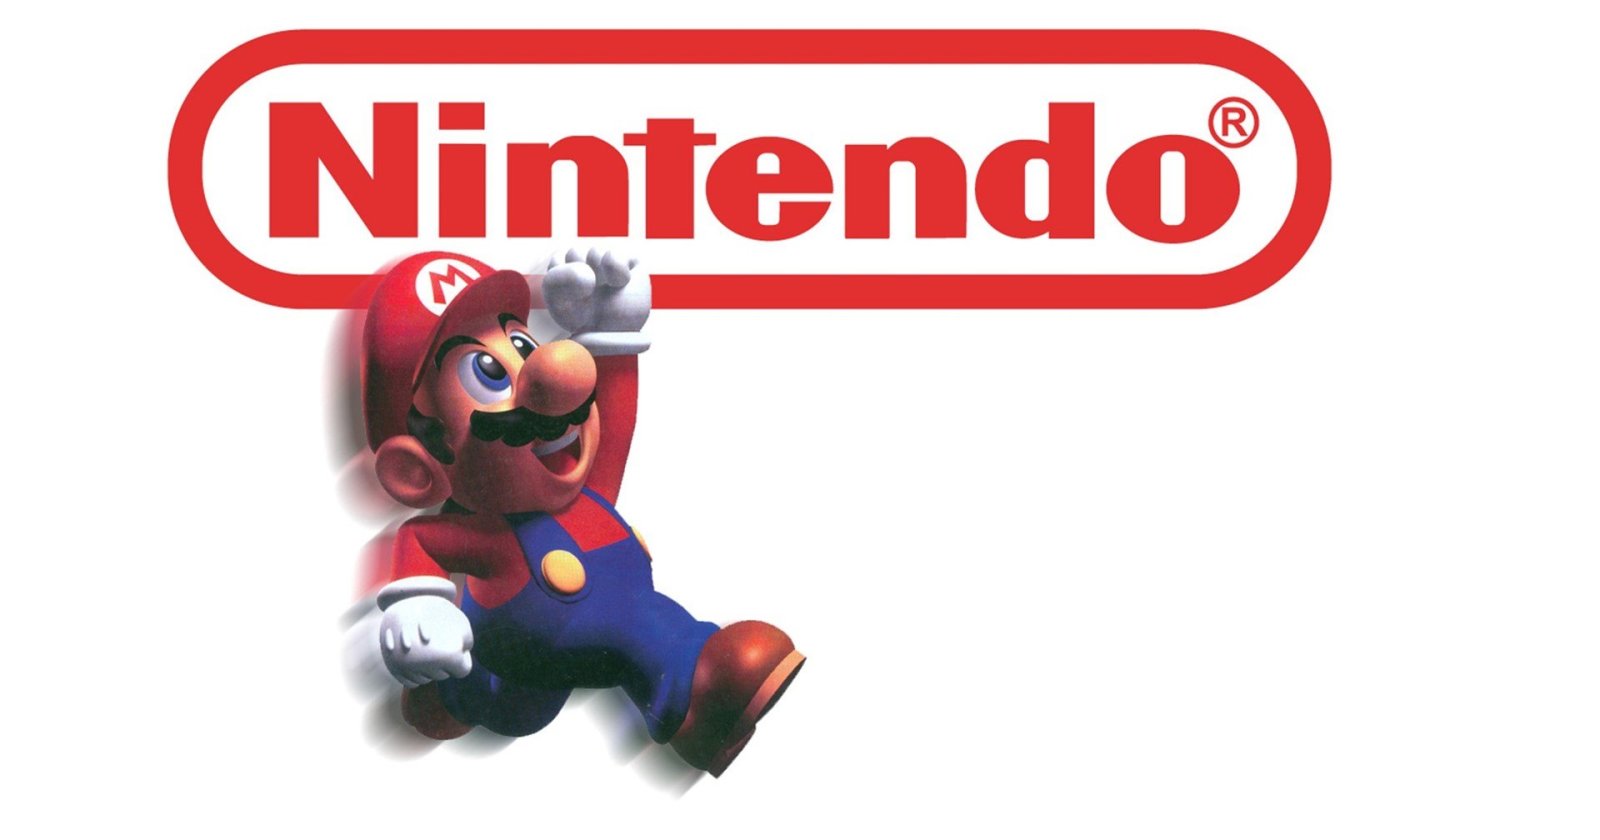 ดูแลทีมงานดี Nintendo มีอัตราการรักษาพนักงาน สูงถึง 98.8%